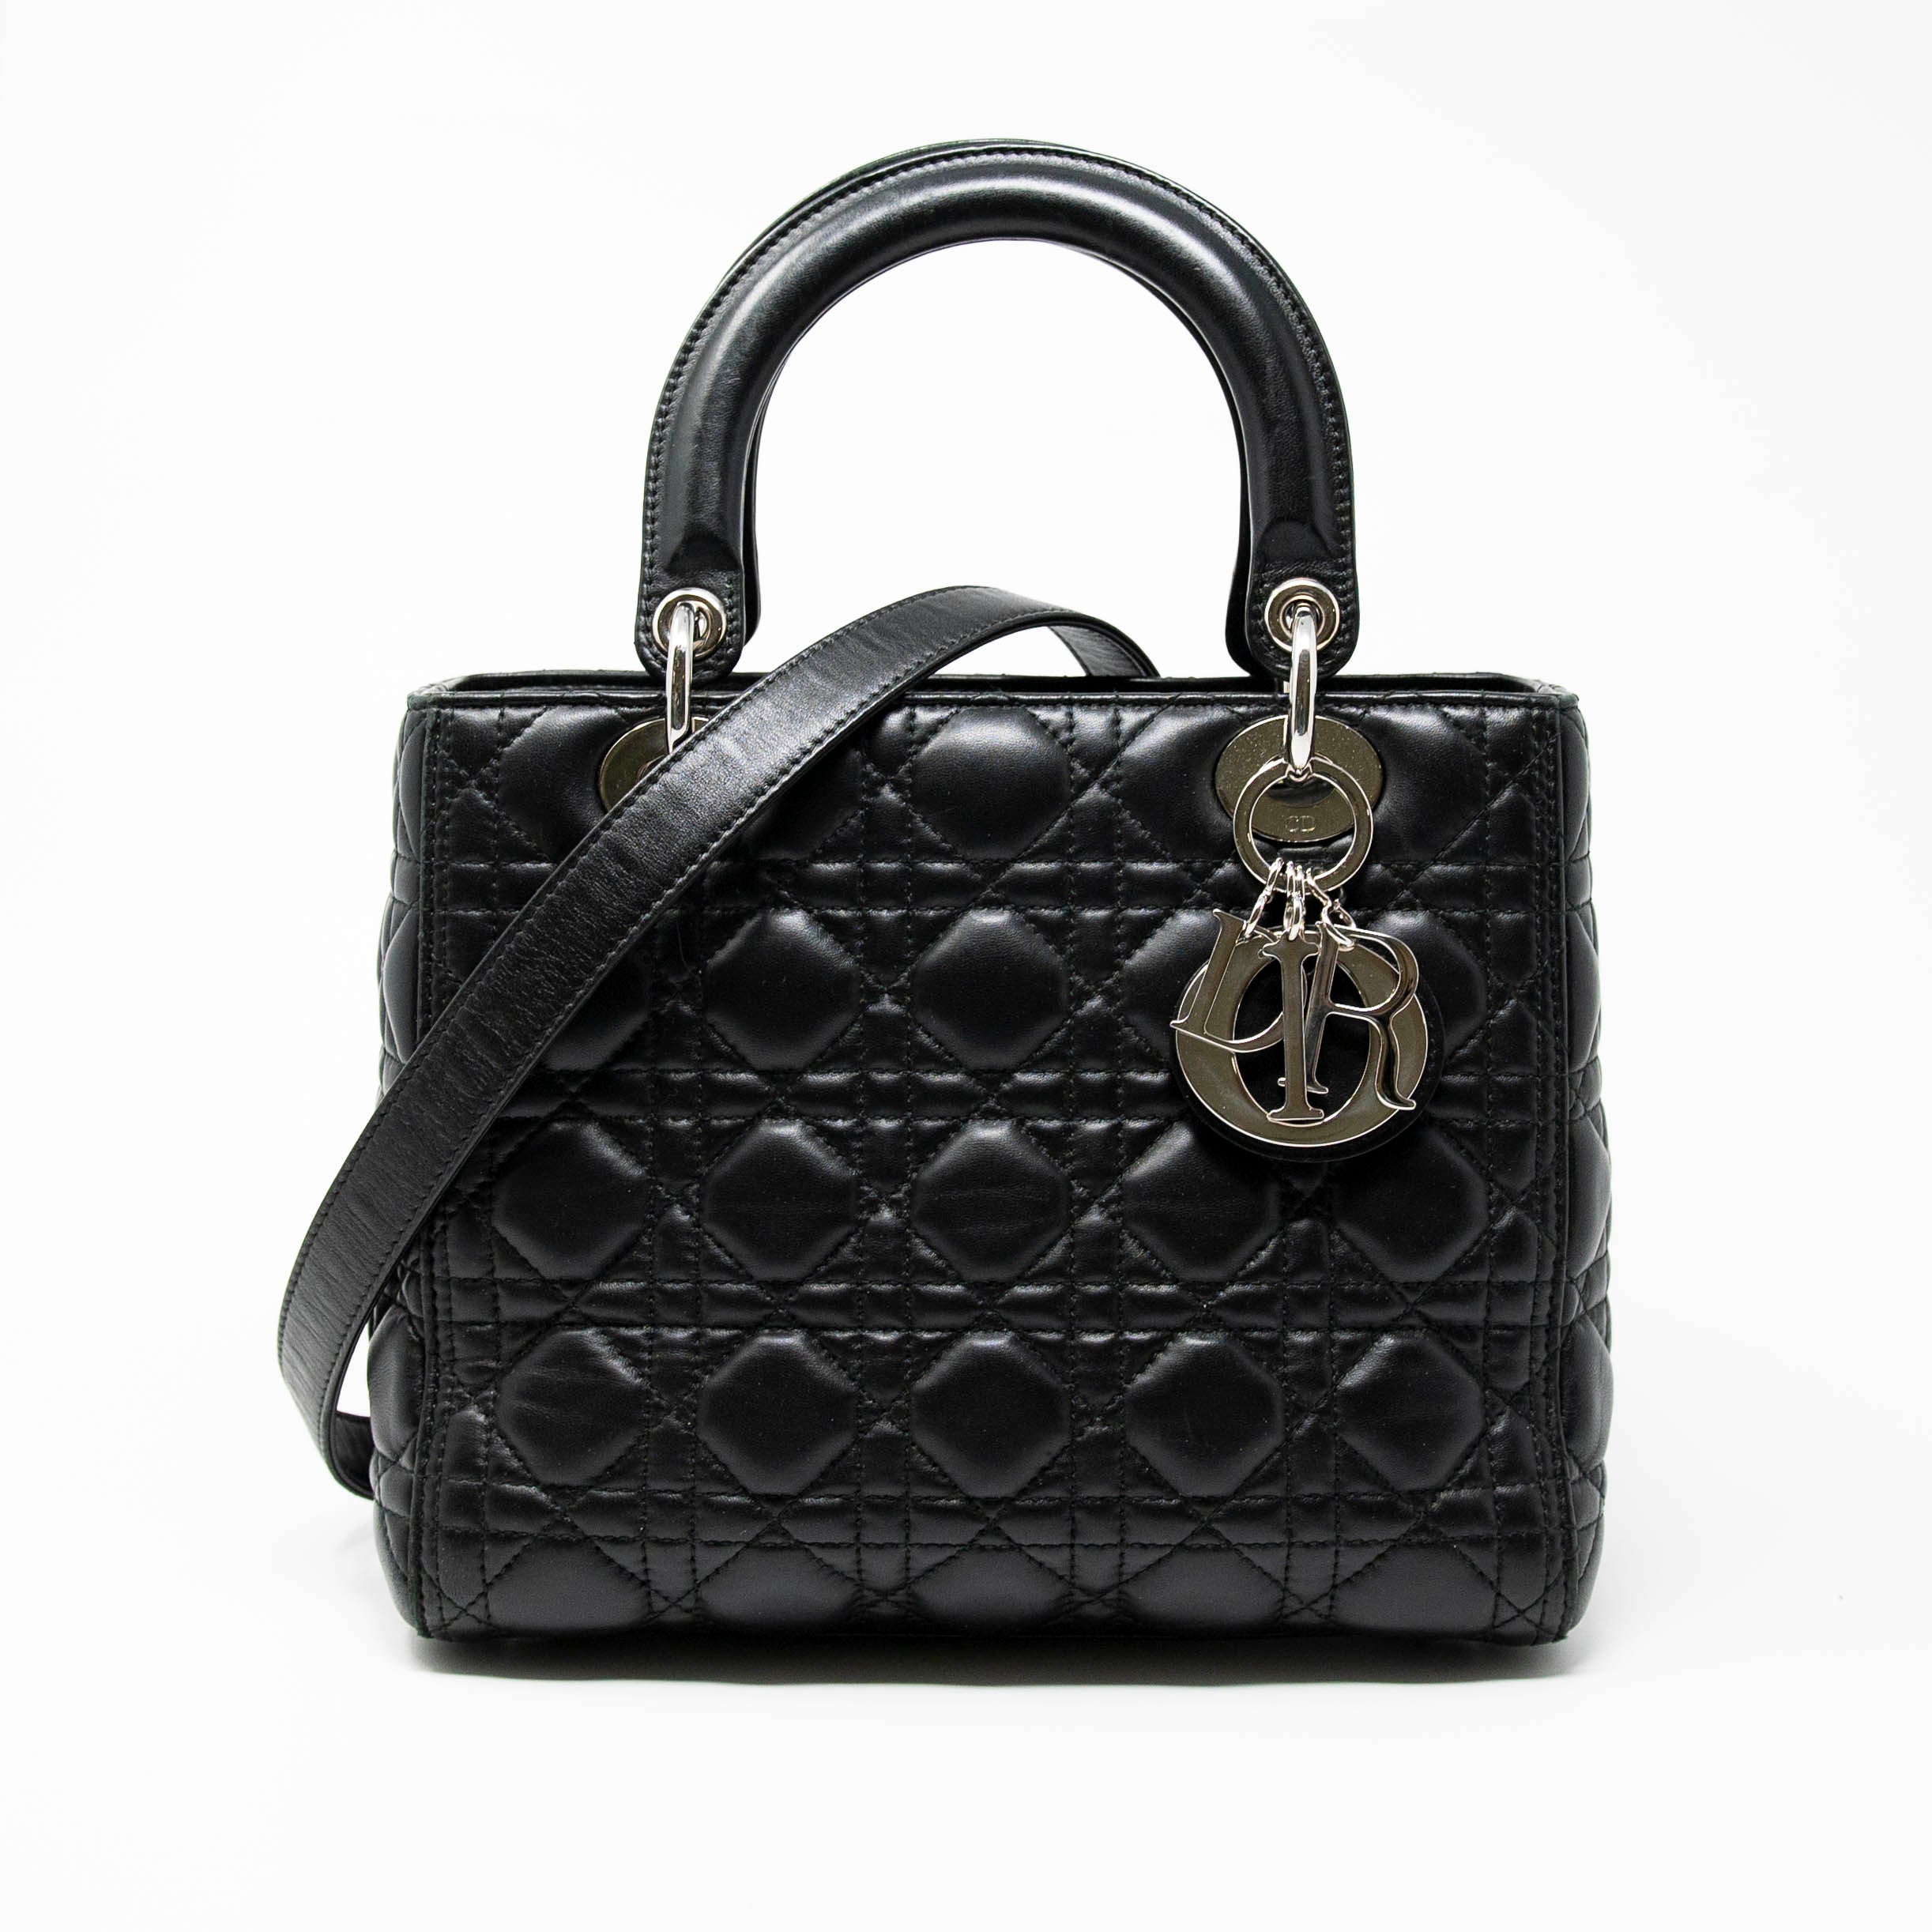 Dior Black Medium Lady Dior Bag